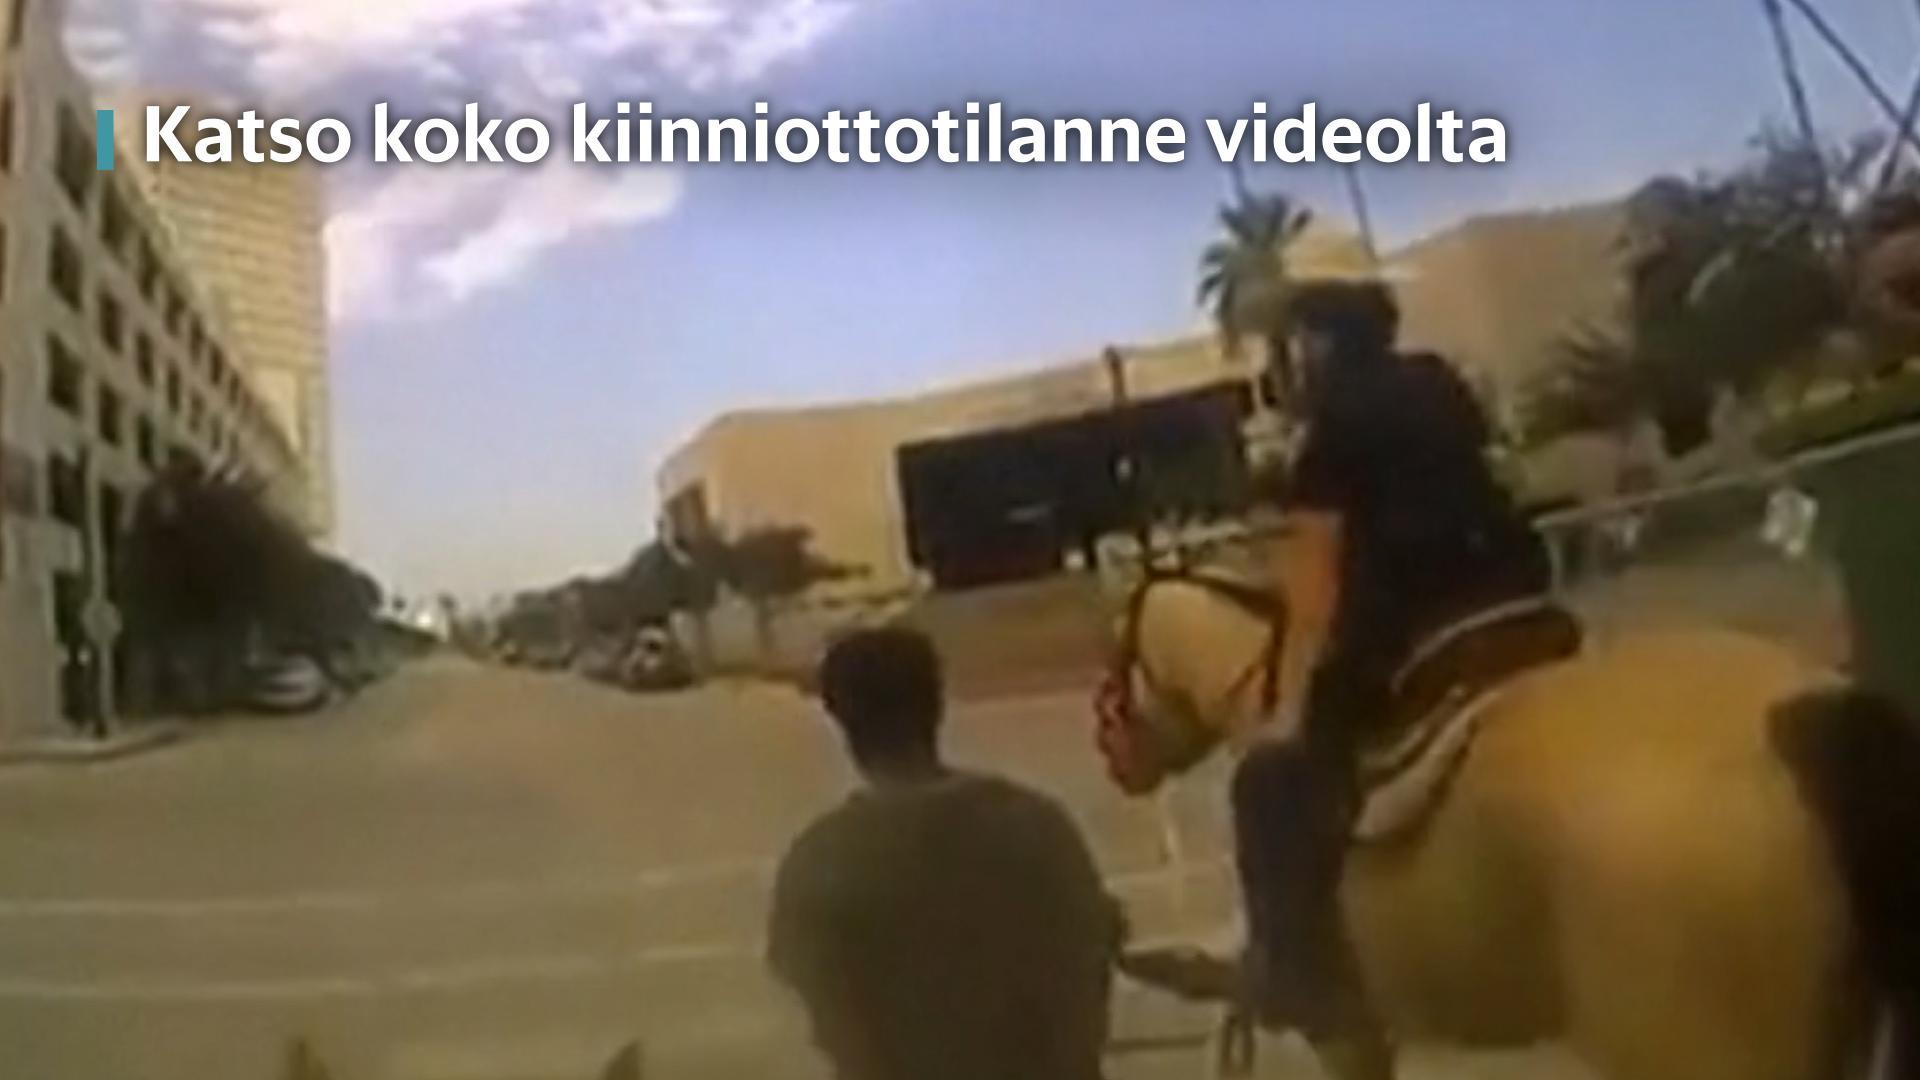 "Tämä näyttää todella pahalta" – video näyttää Galvestonin poliisin kiinnioton"